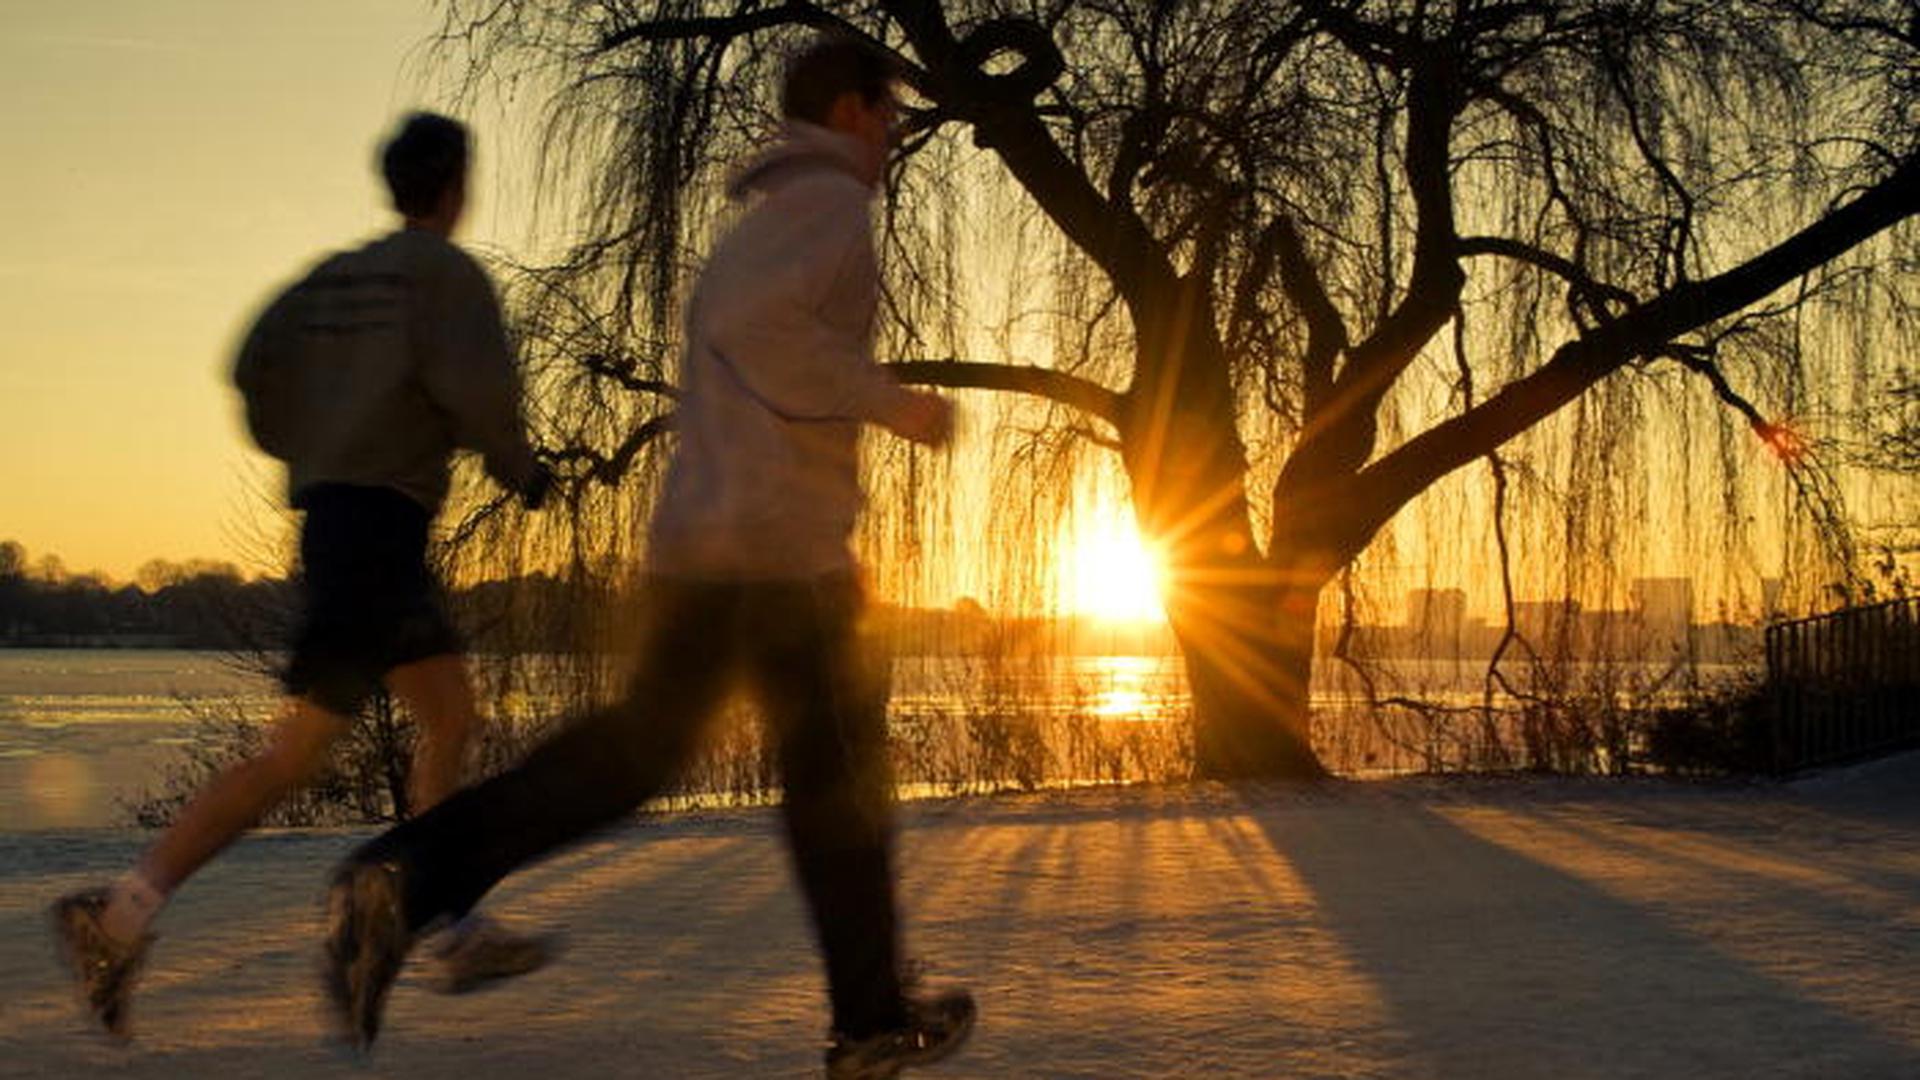 Avec des vêtements adéquats, on peut faire du jogging même en hiver.